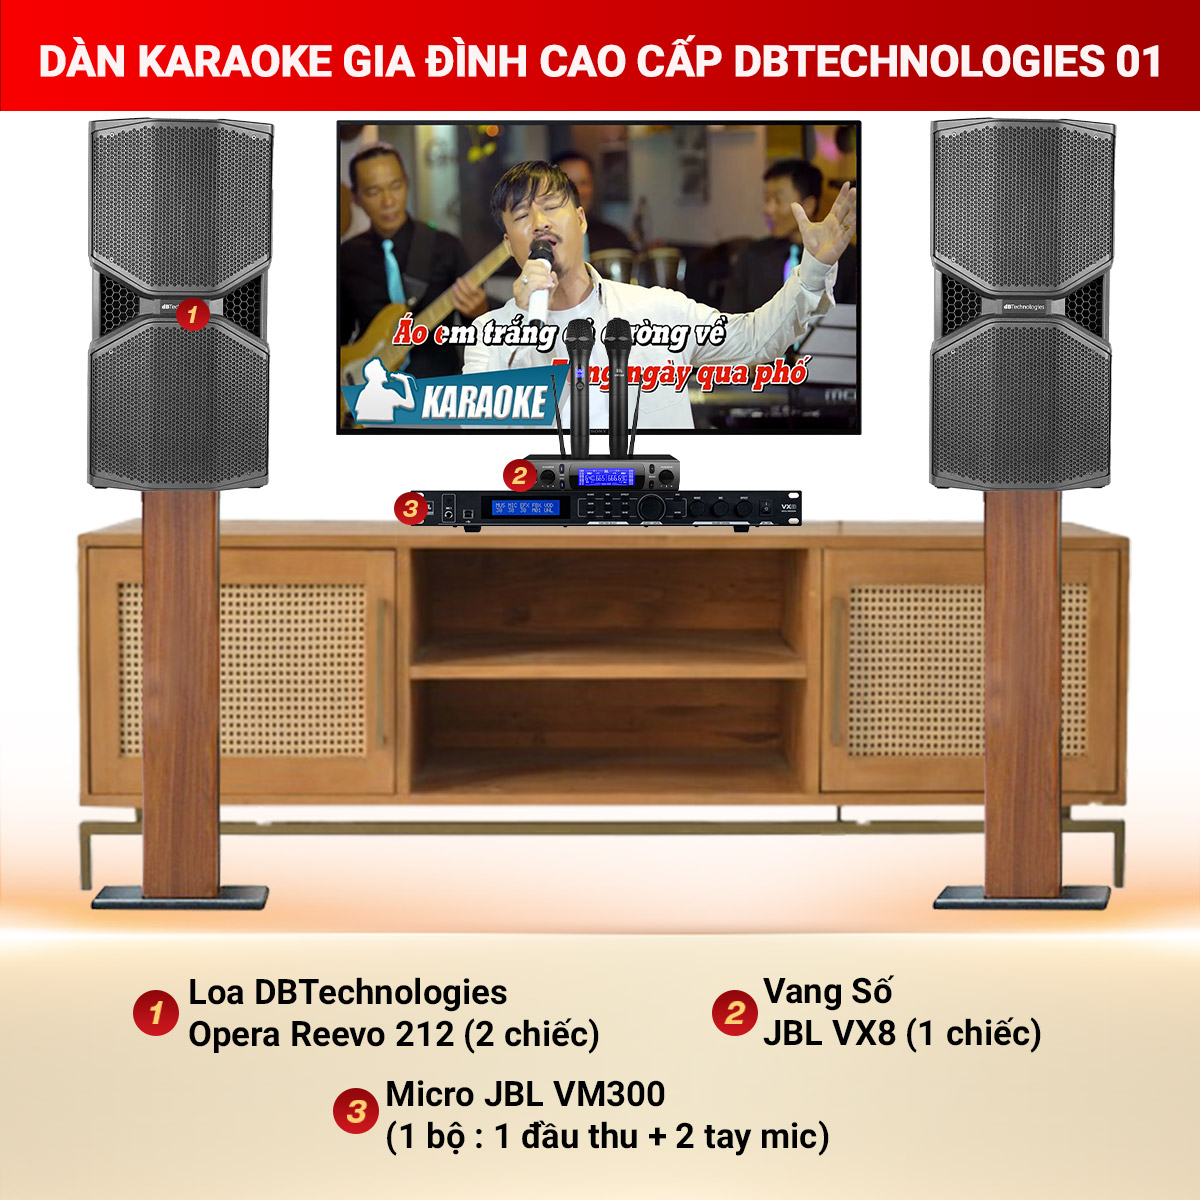 Dàn Karaoke Gia Đình Cao Cấp DBTechnologies 01